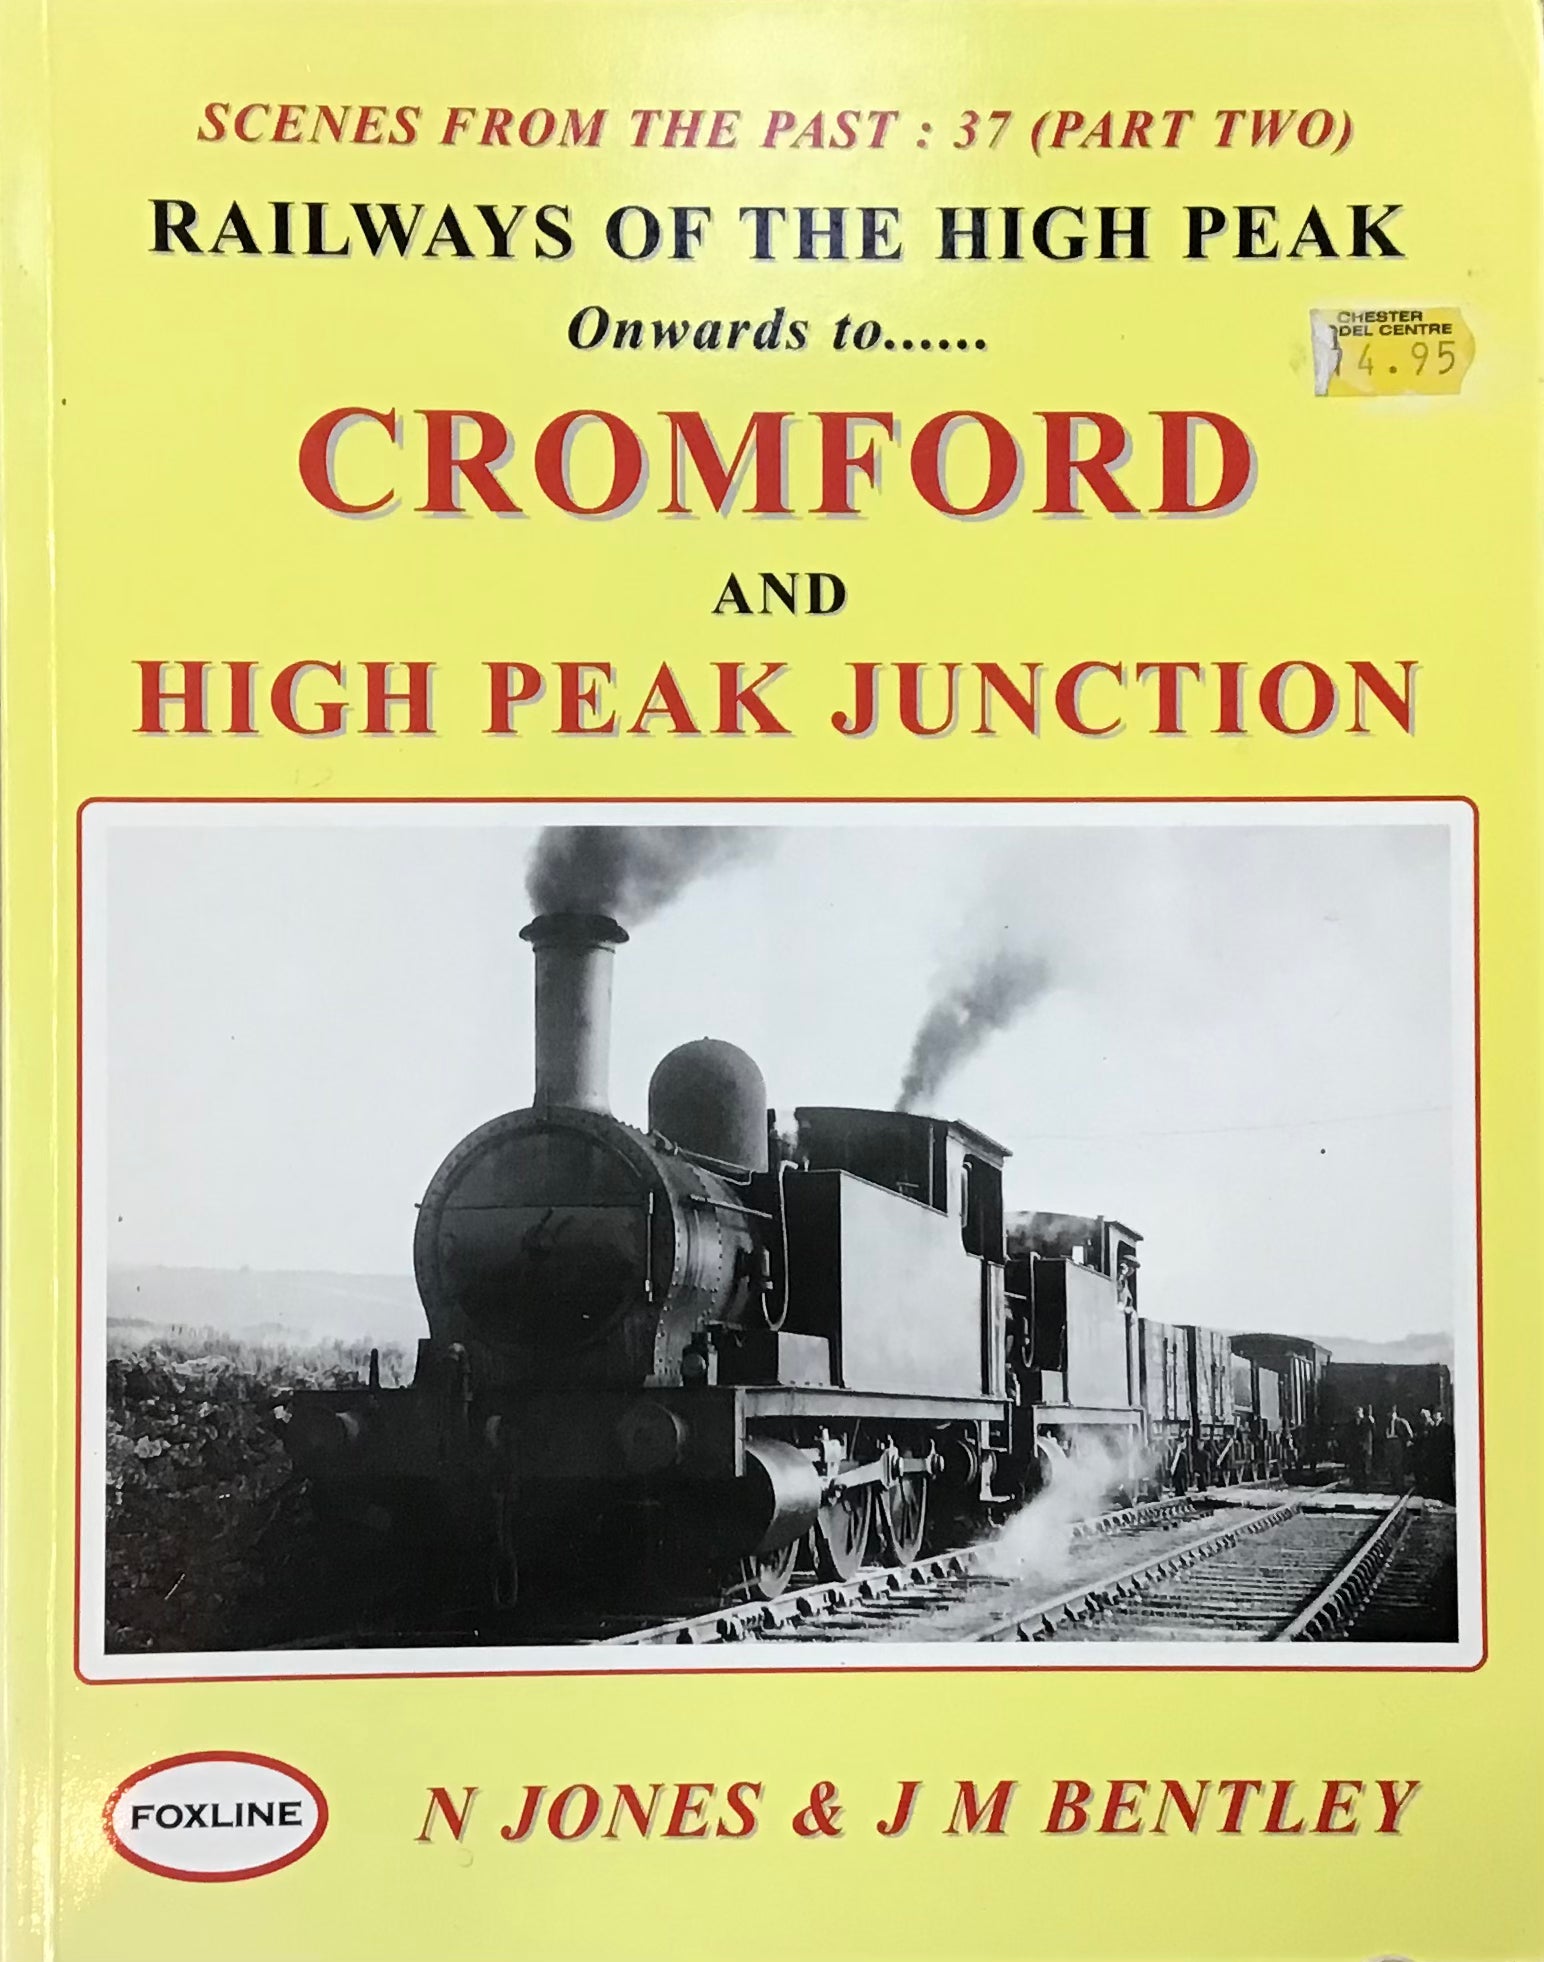 Railways of the High Peak Cromford and High Peak Junction by N Jones & J M Bentley - Chester Model Centre